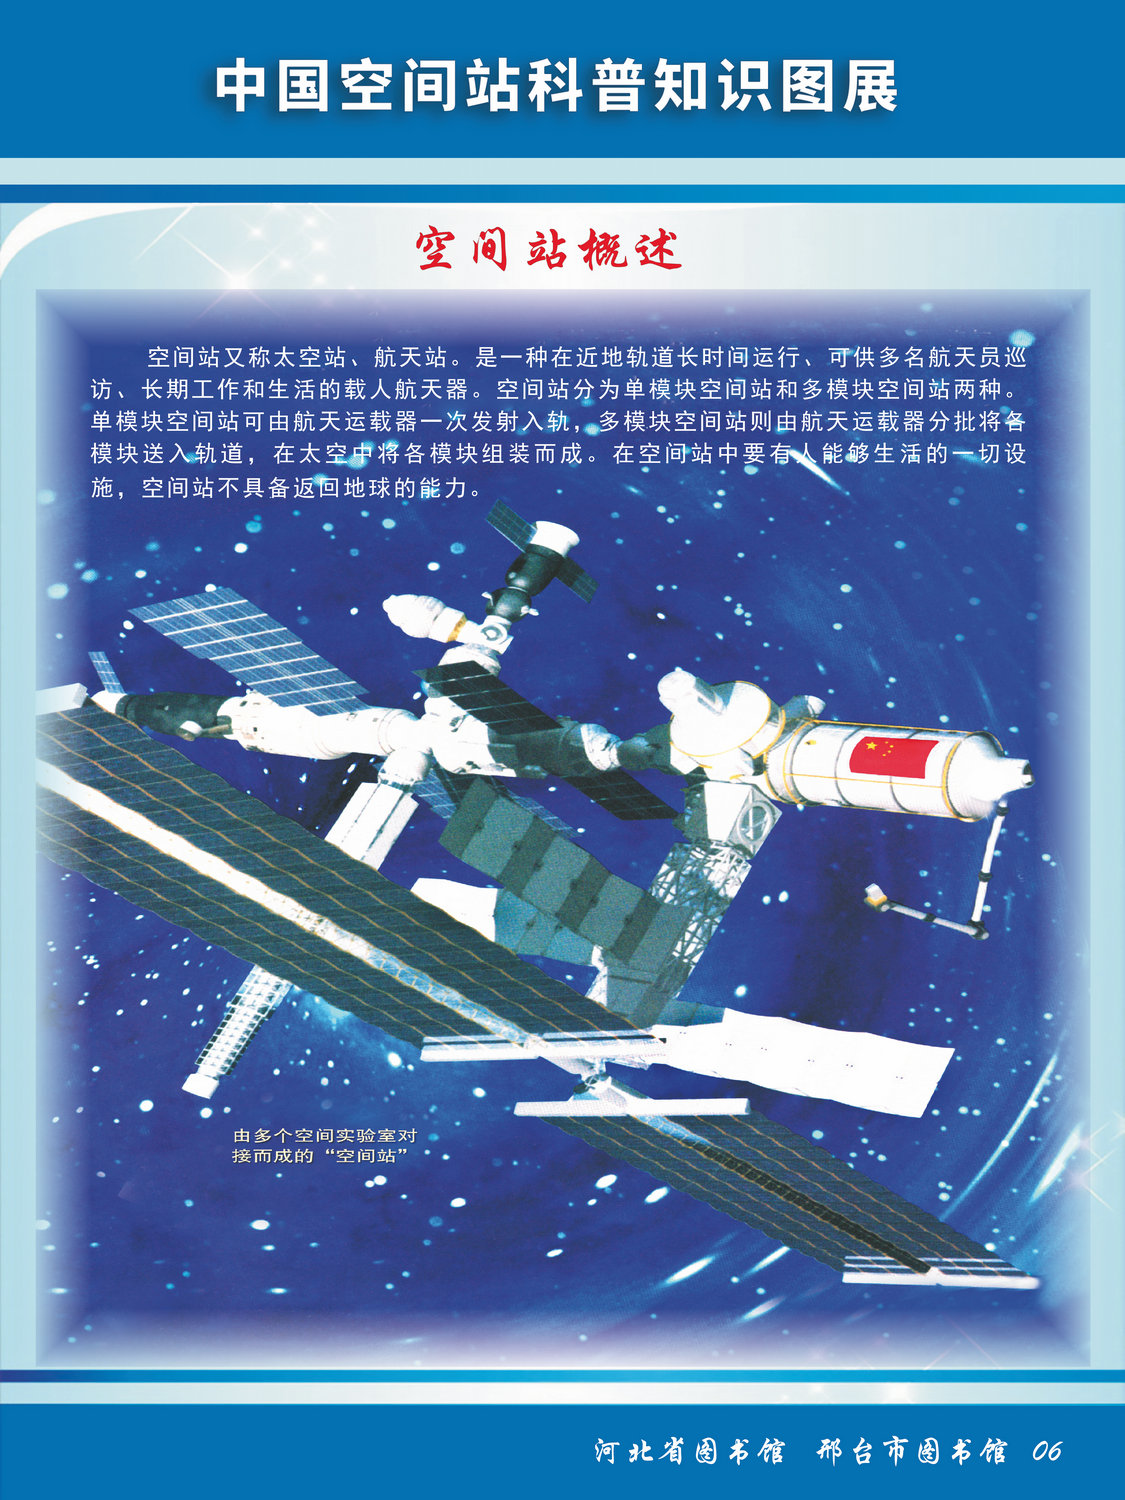 中国空间站科普知识图文展_图6